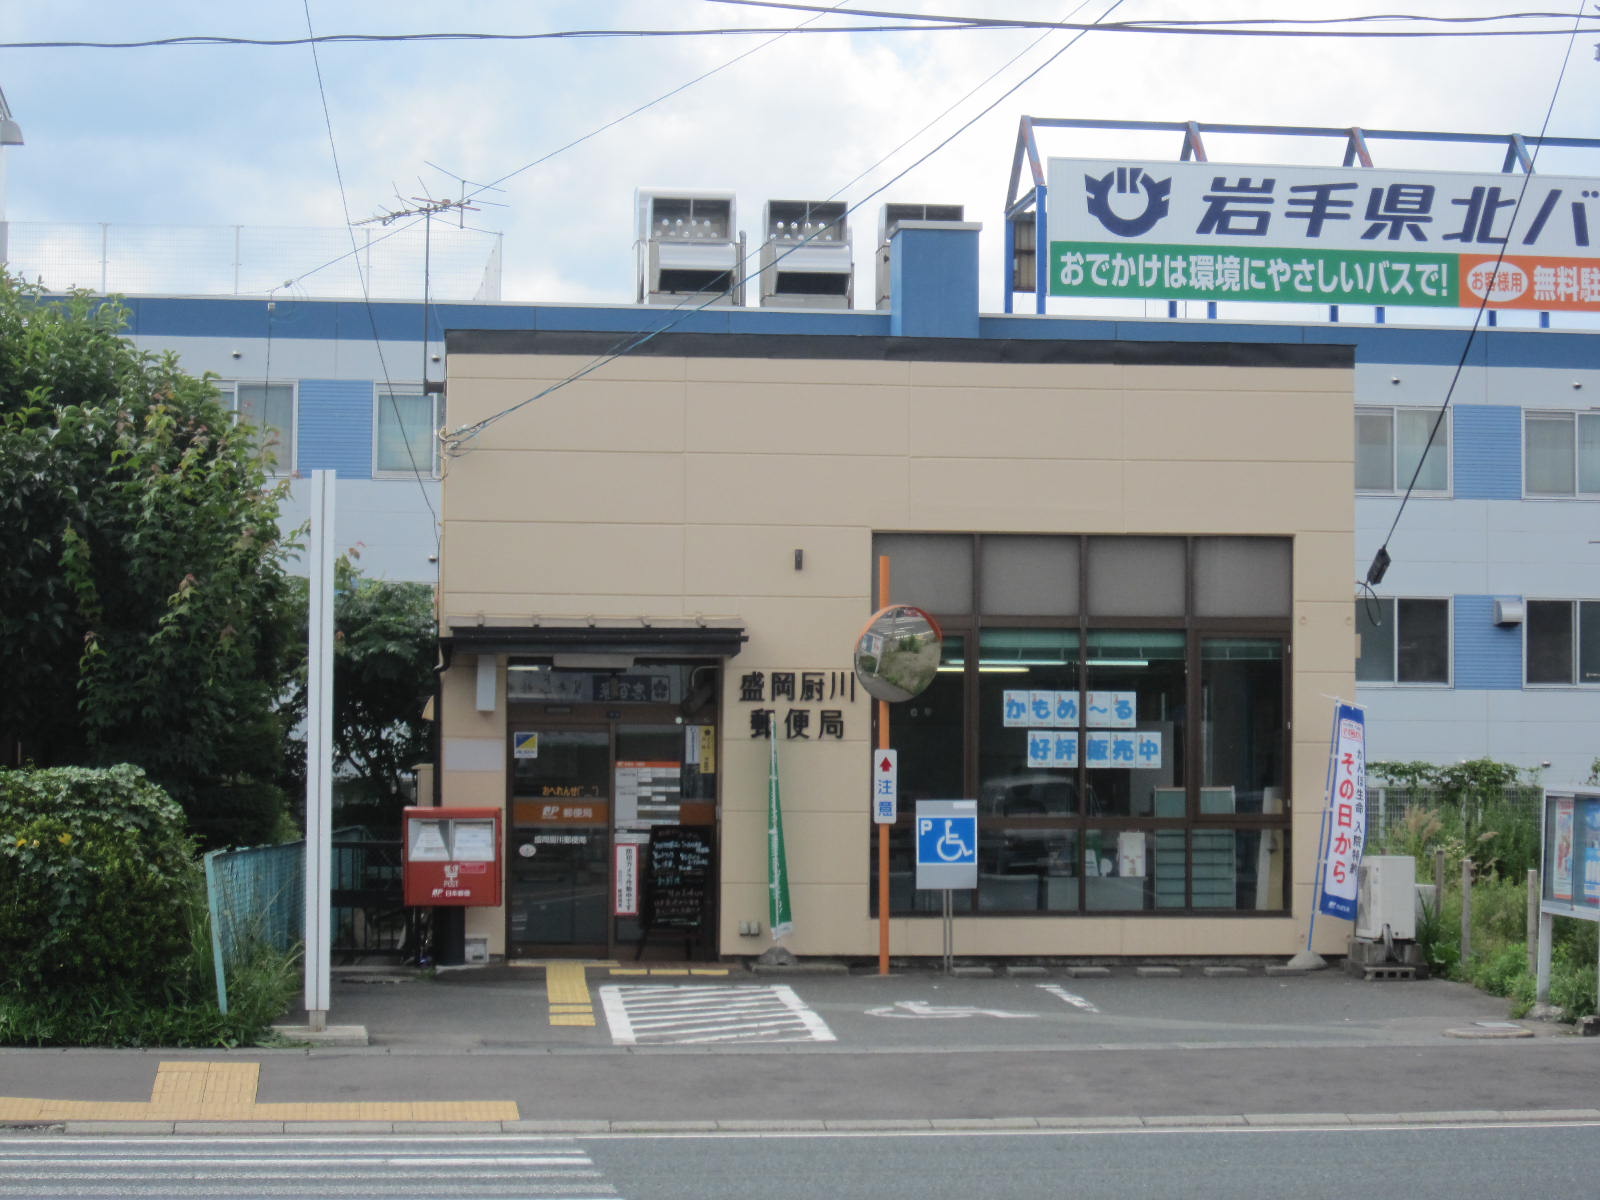 post office. 980m to Morioka Kuriyagawa post office (post office)